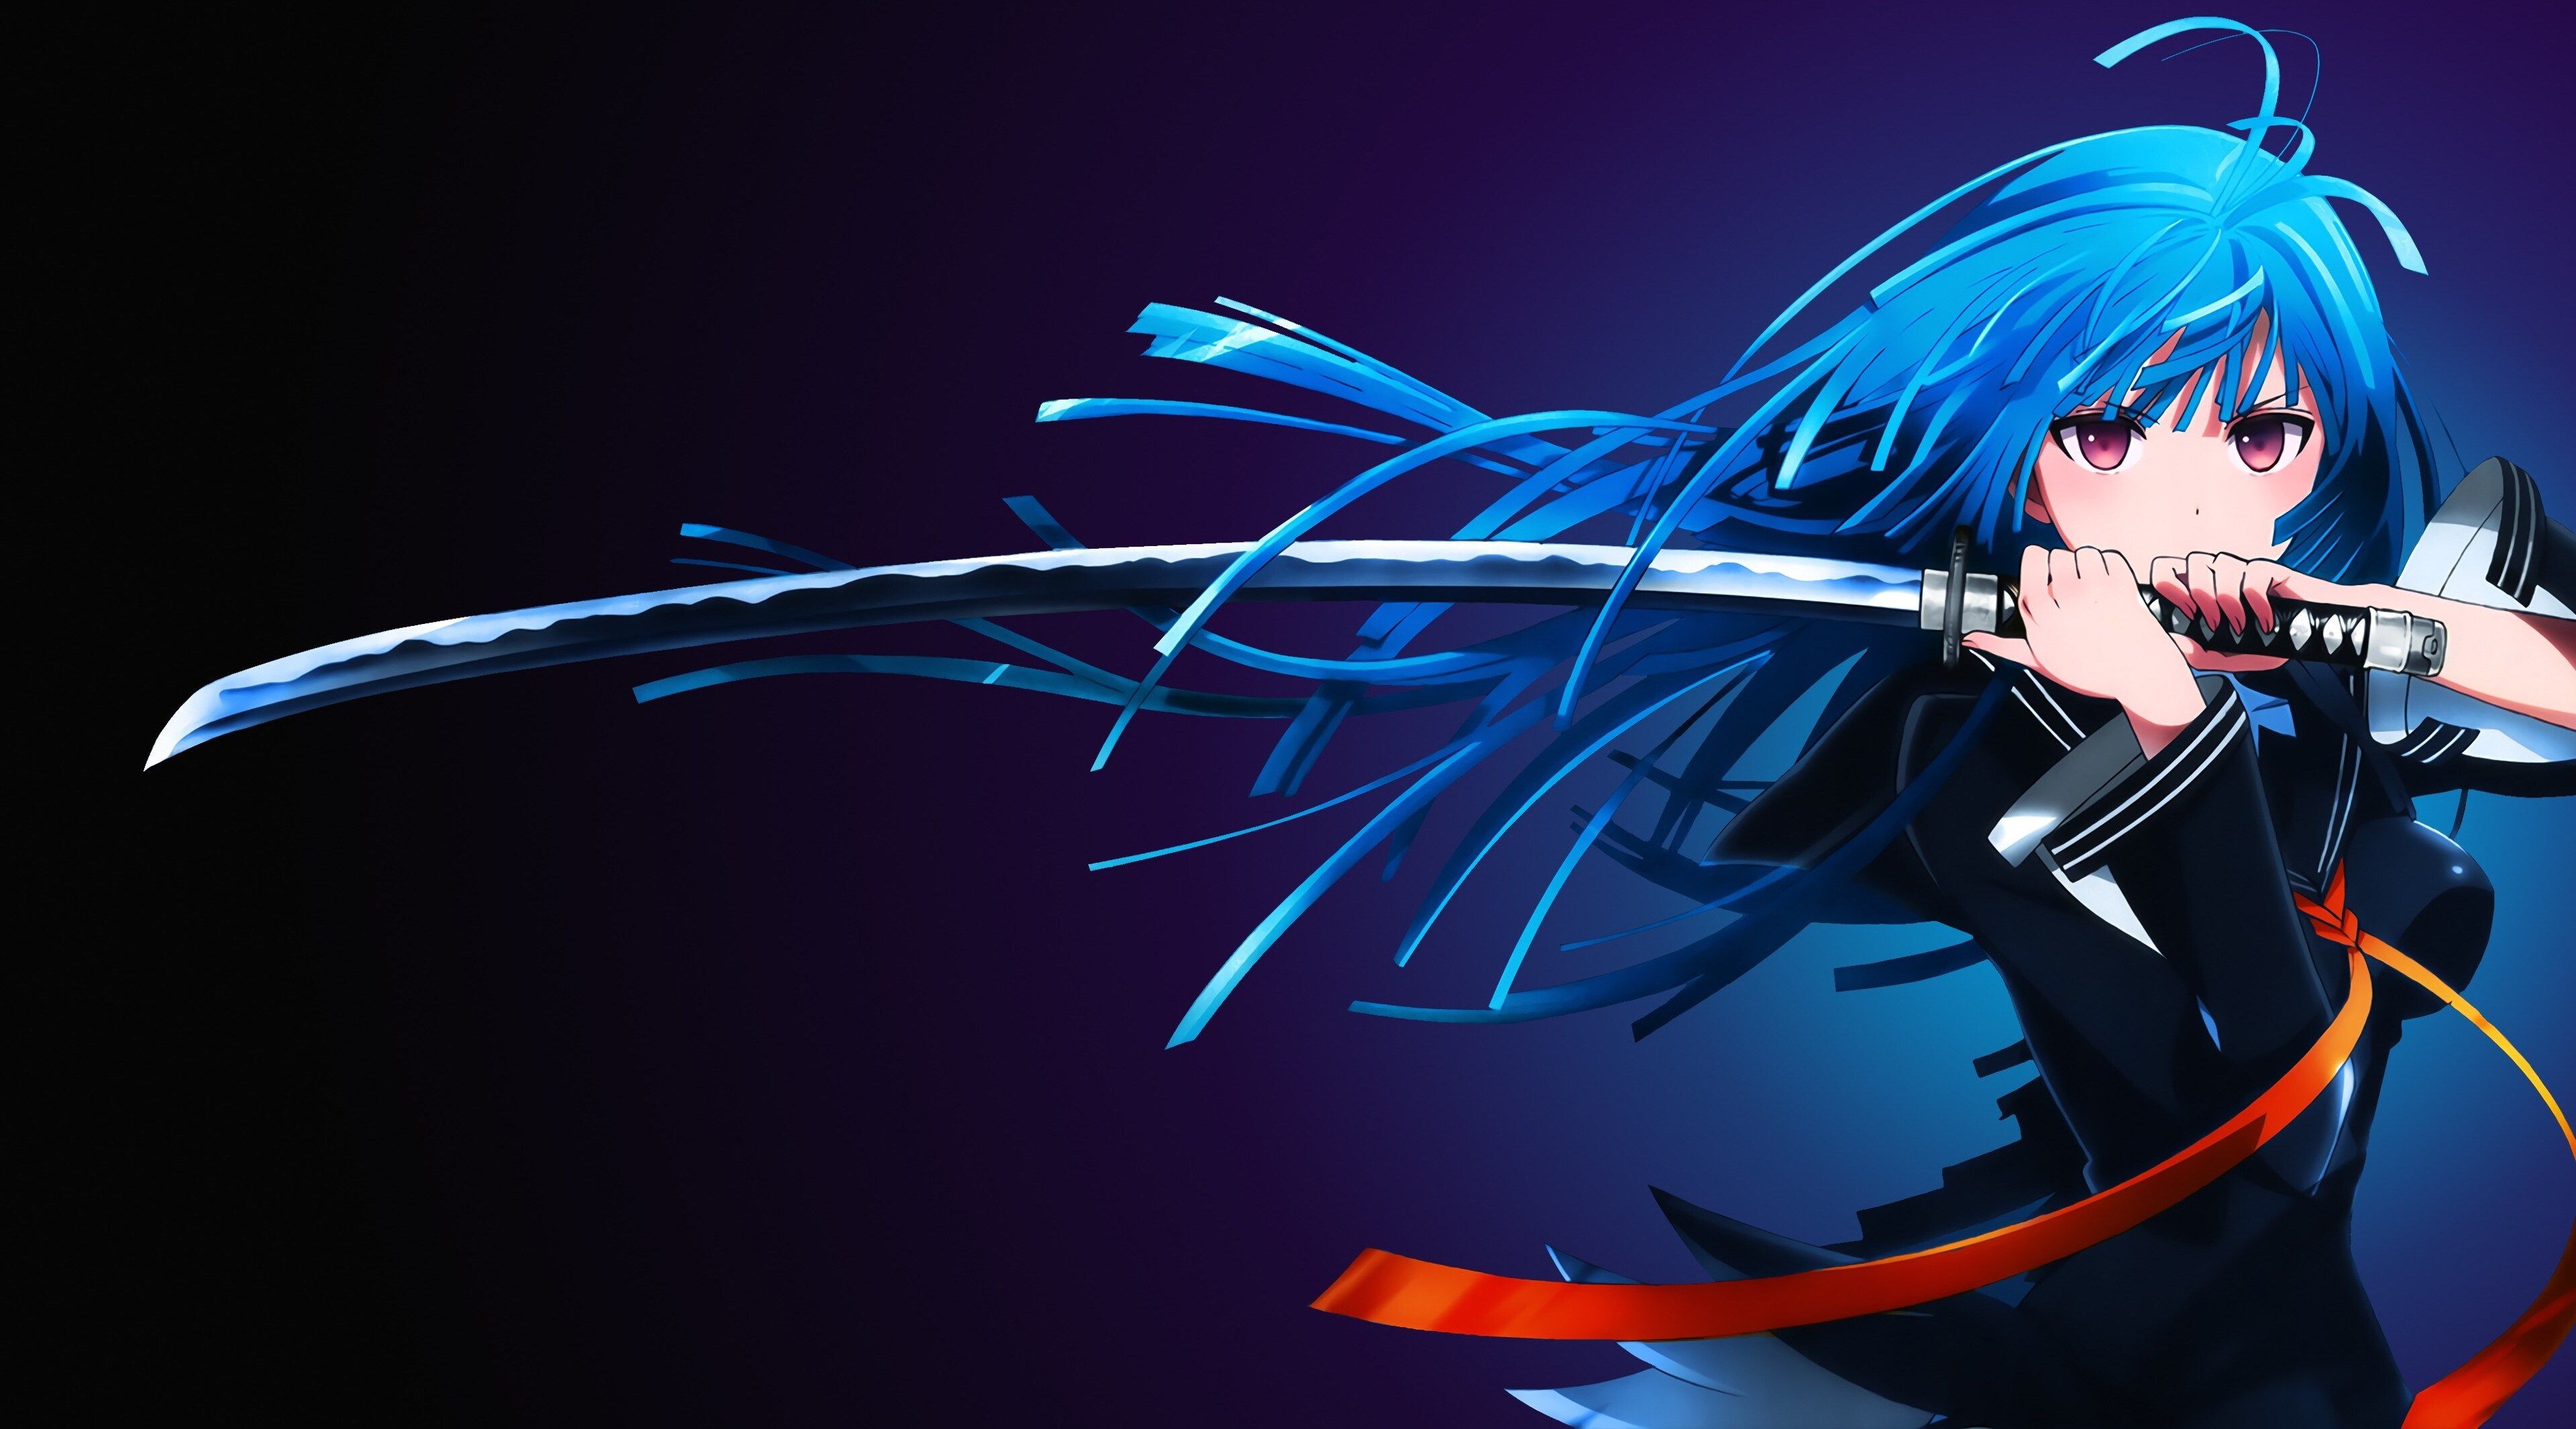 Anime 4k Wallpaper In HD For Pc Gadis Animasi Gambar